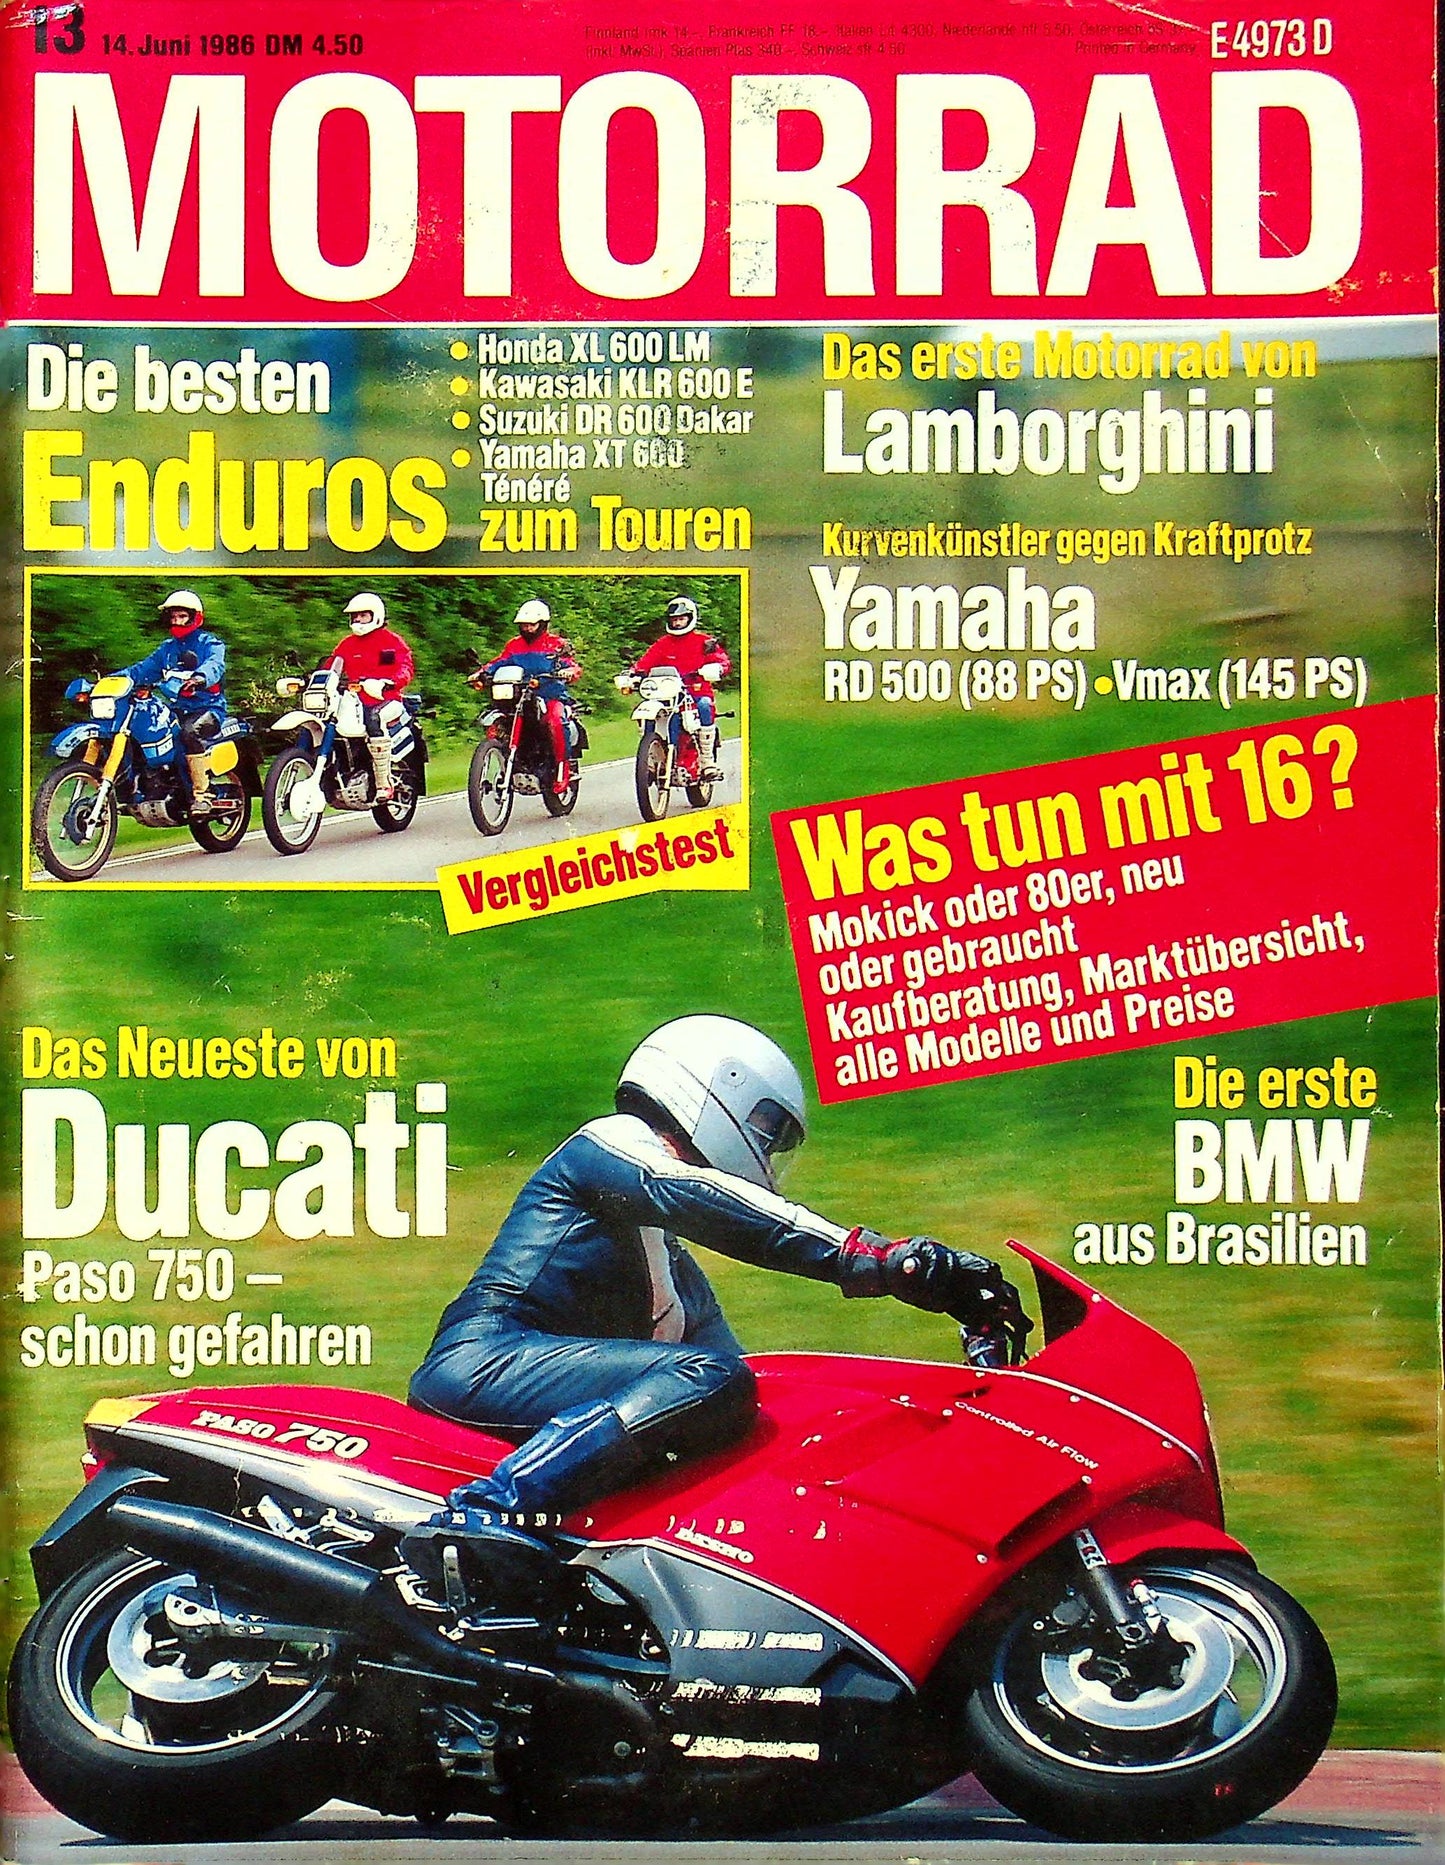 Motorrad 13/1986